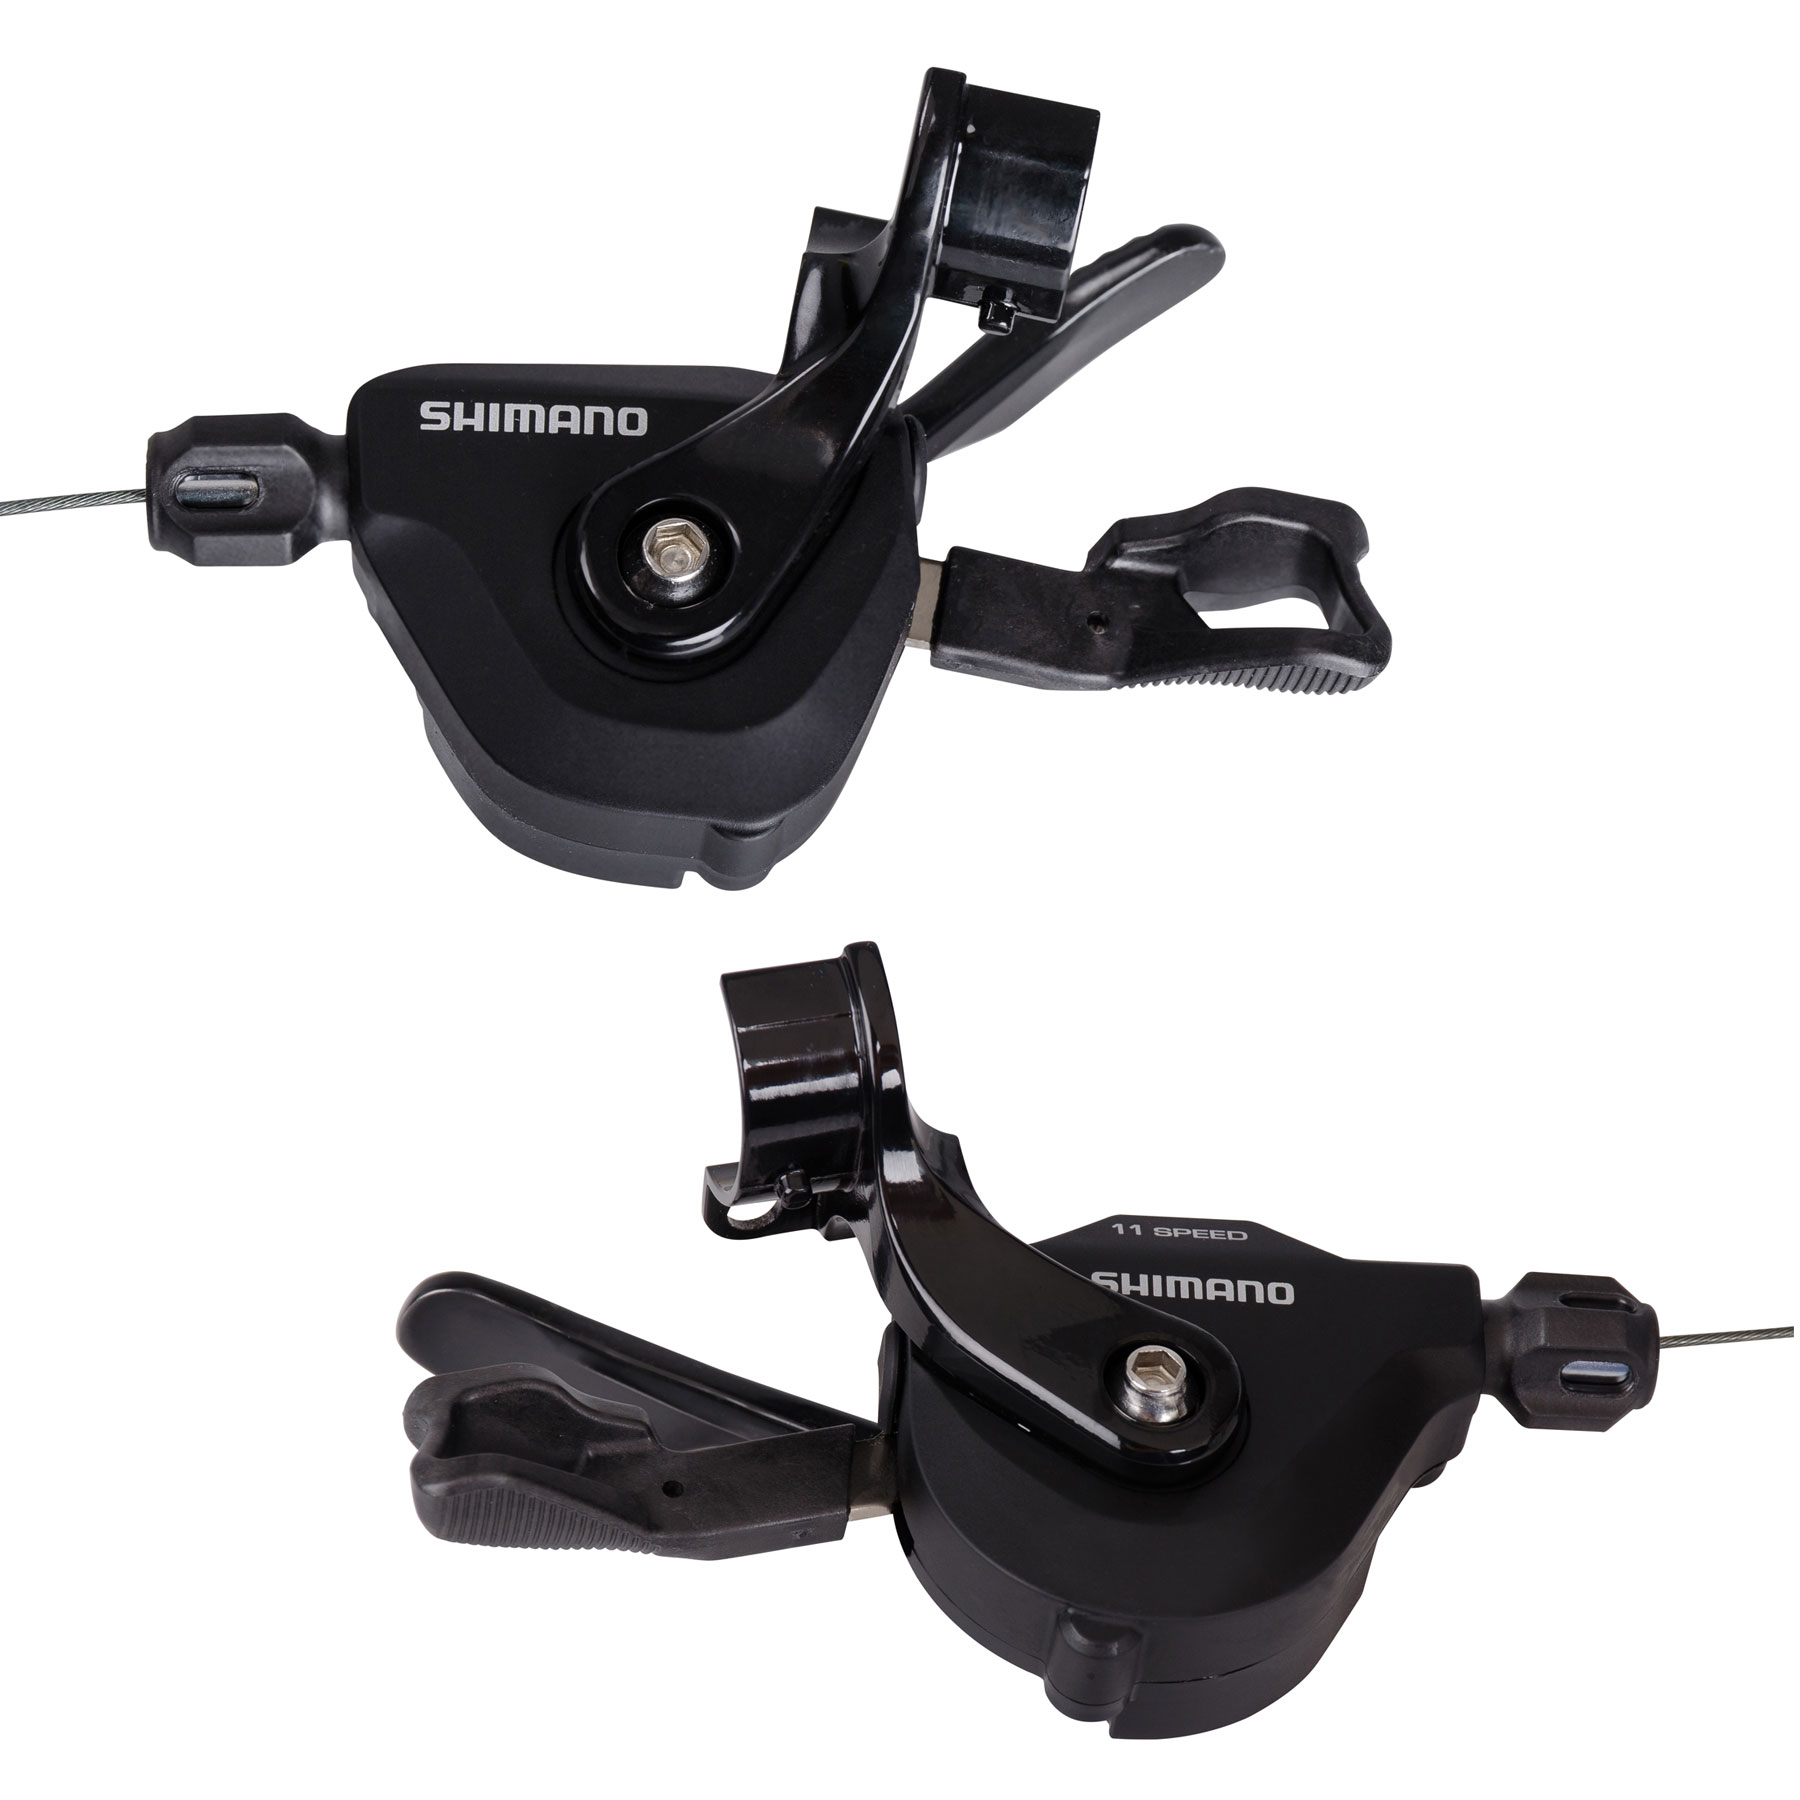 Produktbild von Shimano SL-RS700 Rapidfire Plus Flatbar Schalthebel - I-Spec II - 2x11-fach - Paar - schwarz